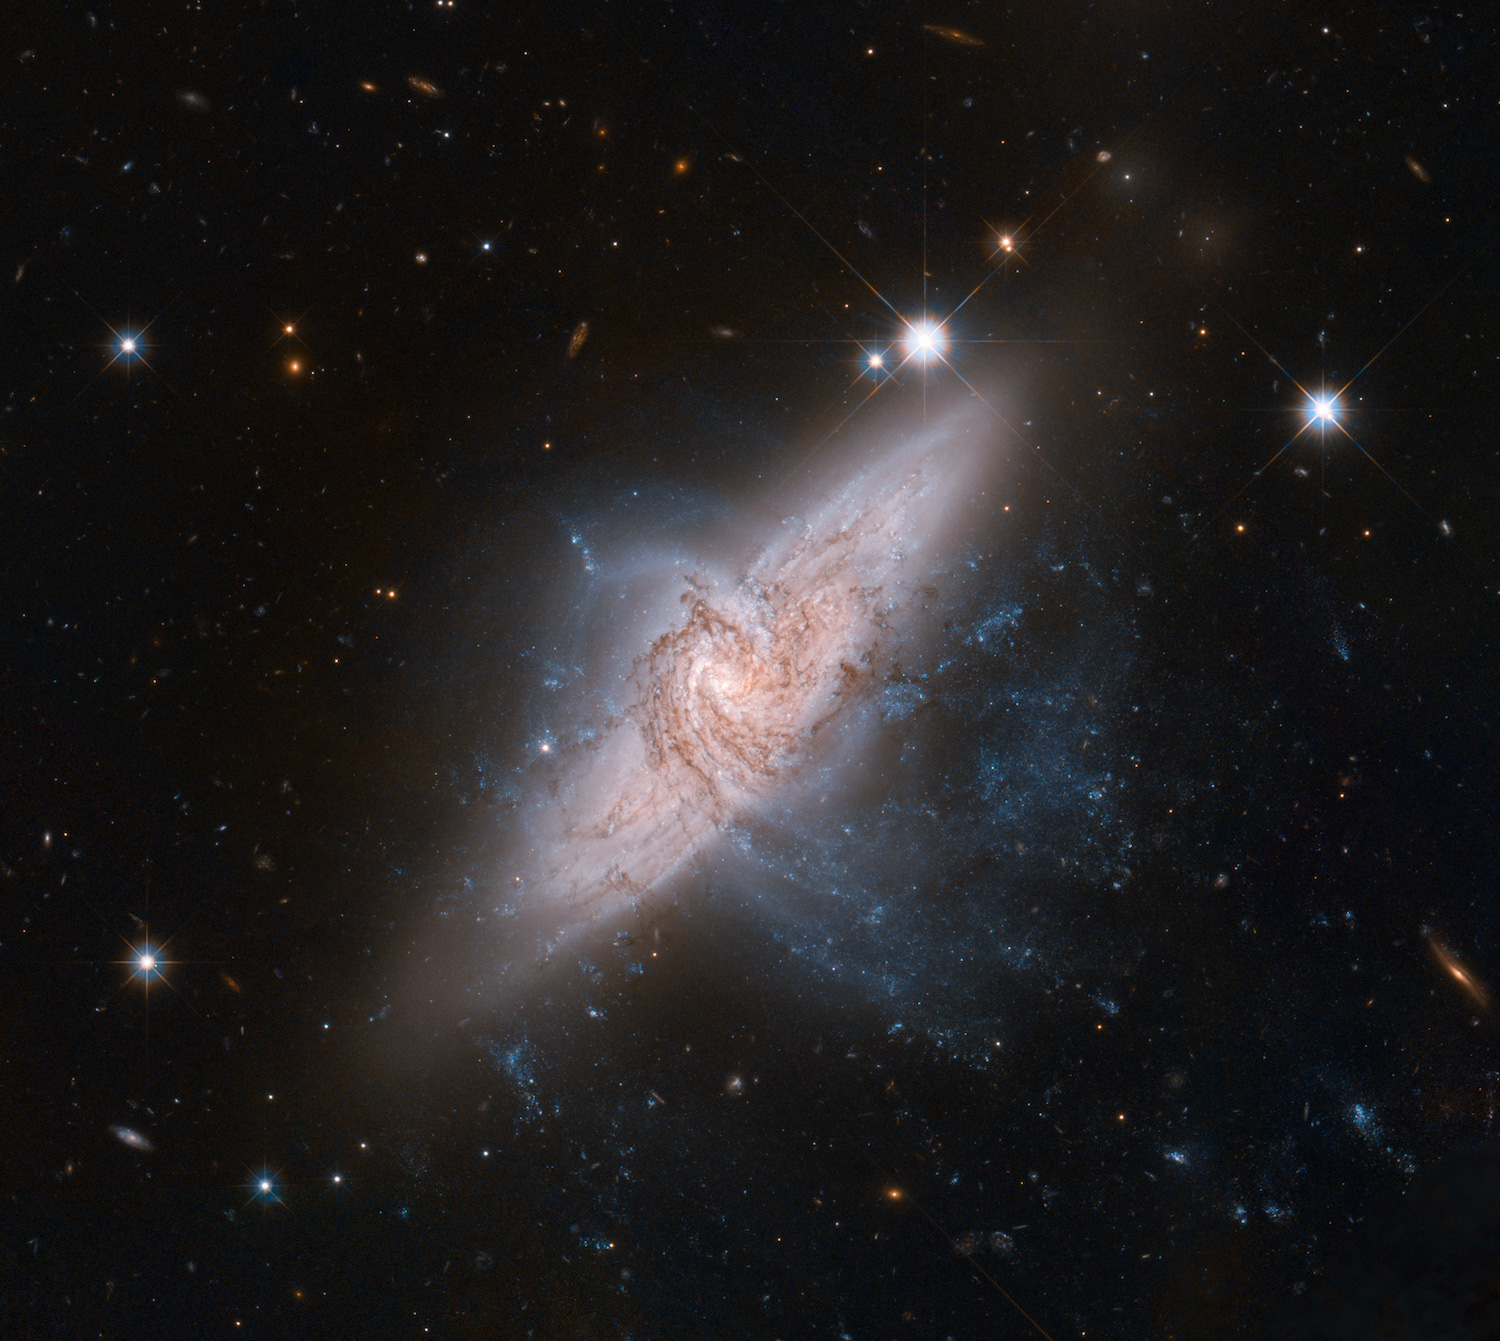 Kính viễn vọng Không gian Hubble của NASA / ESA vào tháng 6/2012 đã chụp được một hình ảnh cực kỳ chi tiết về một cặp thiên hà chồng lên nhau được gọi là NGC 3314, mặc dù có vẻ như va chạm nhưng thực tế lại cách nhau hàng chục triệu năm ánh sáng. (Ảnh của NASA, ESA, Di sản Hubble (STScI / AURA) -ESA / Hubble Collaboration và W. Keel (Đại học Alabama) / CC BY 4.0)